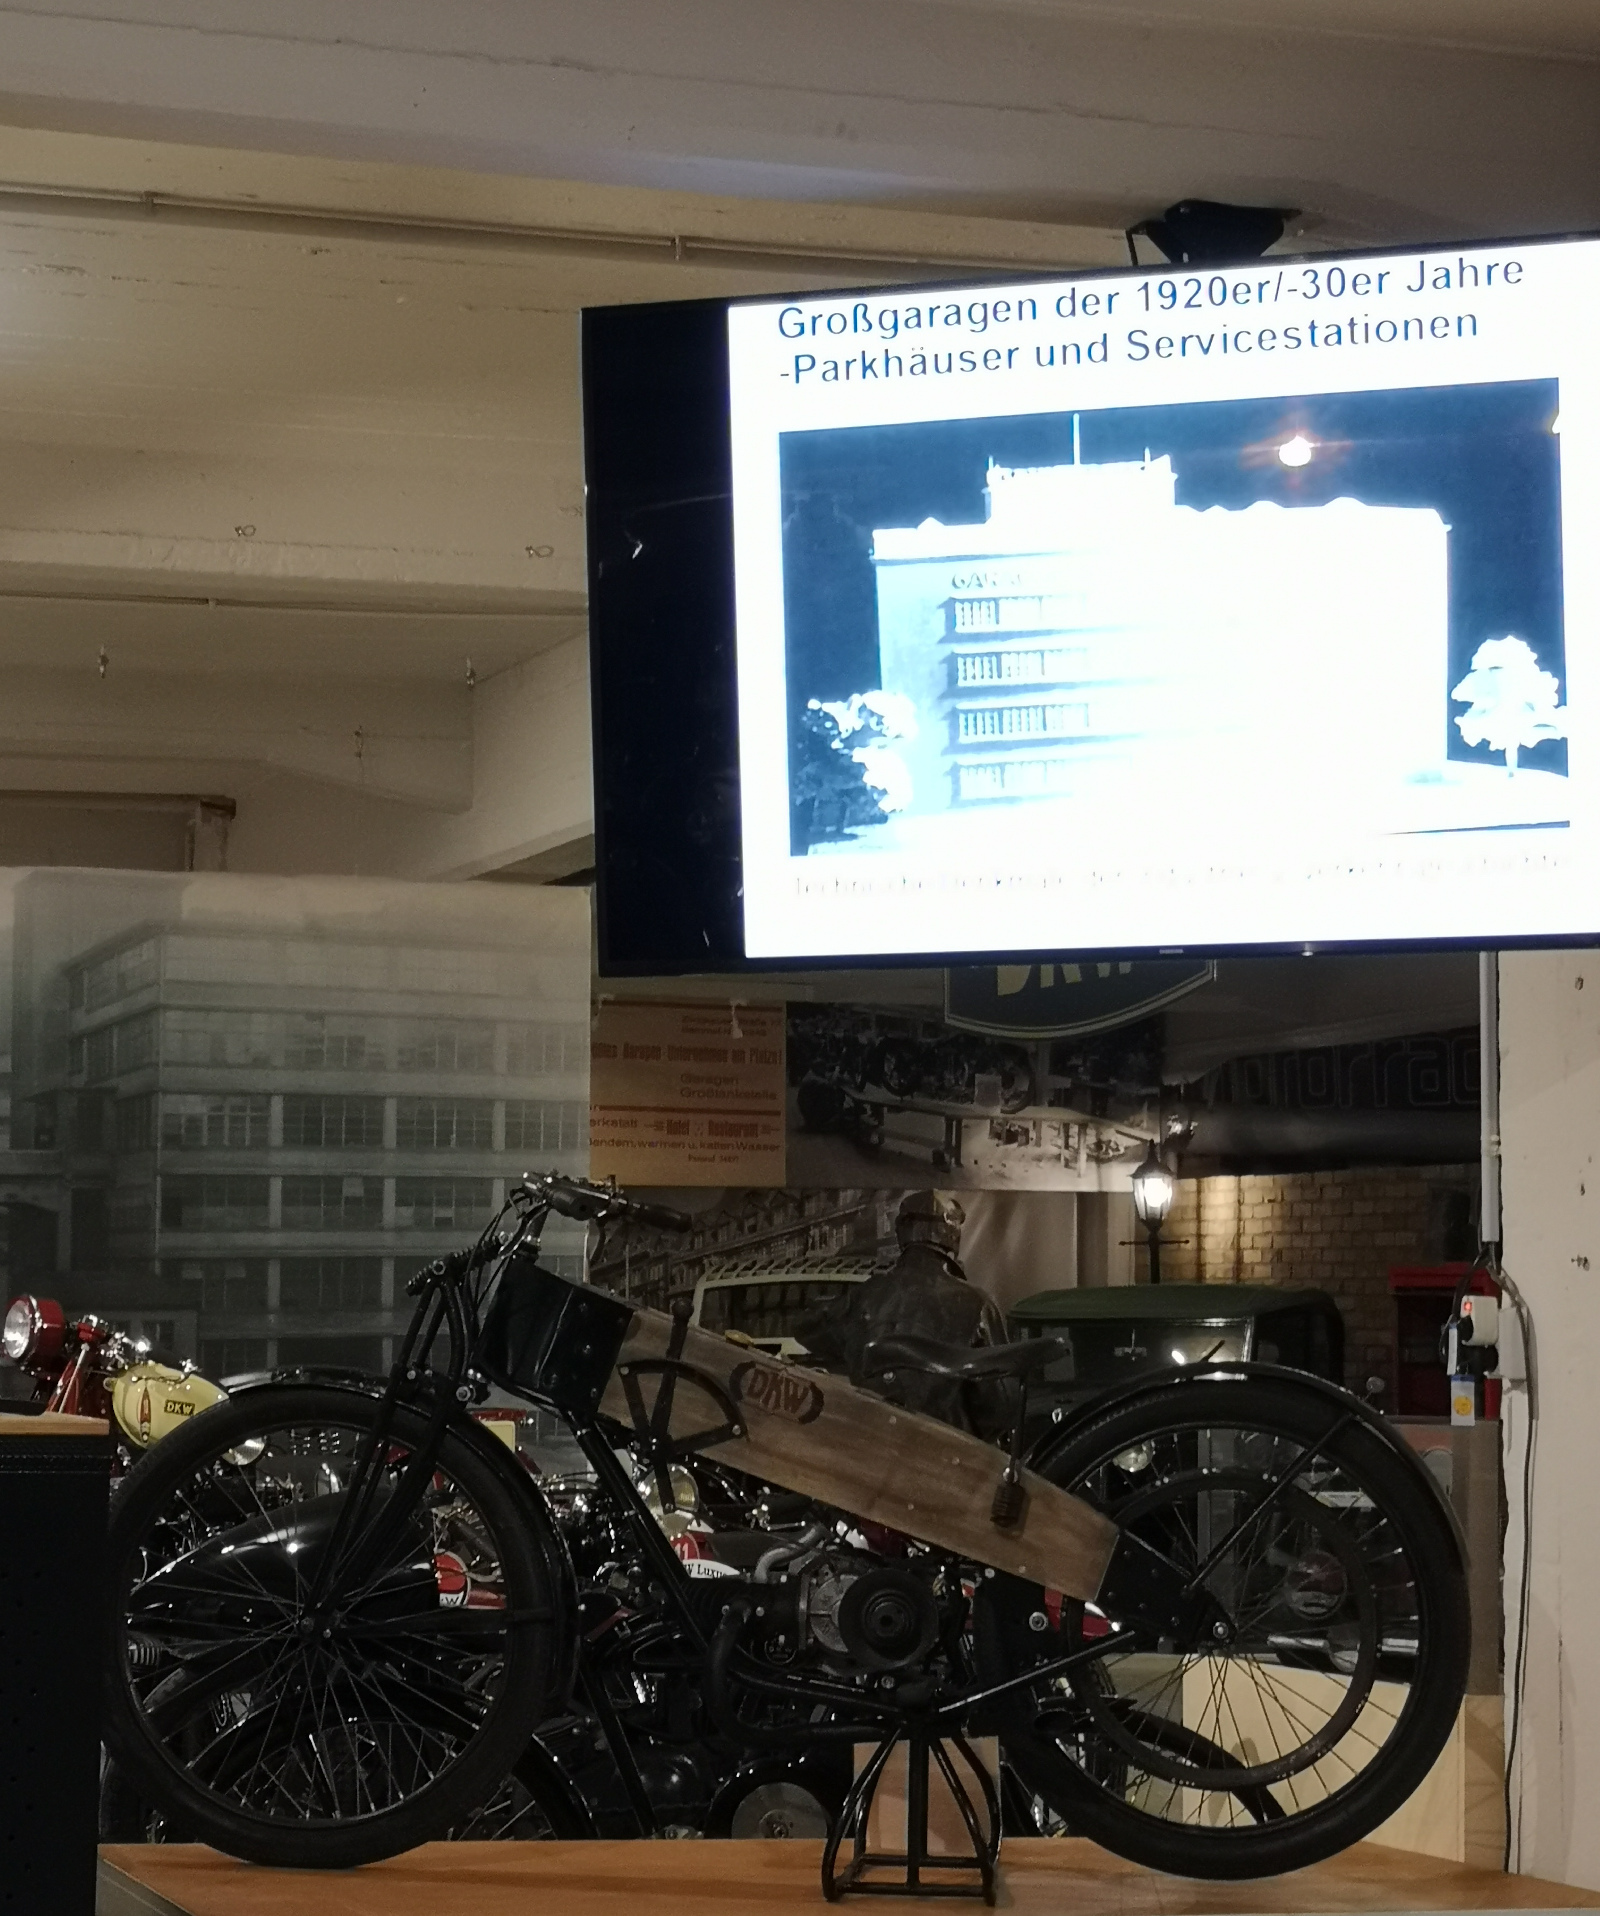 DKW-Motorrad unter dem Bildschirm mit einer Folie aus dem Vortrag von Thomas Morgenstern